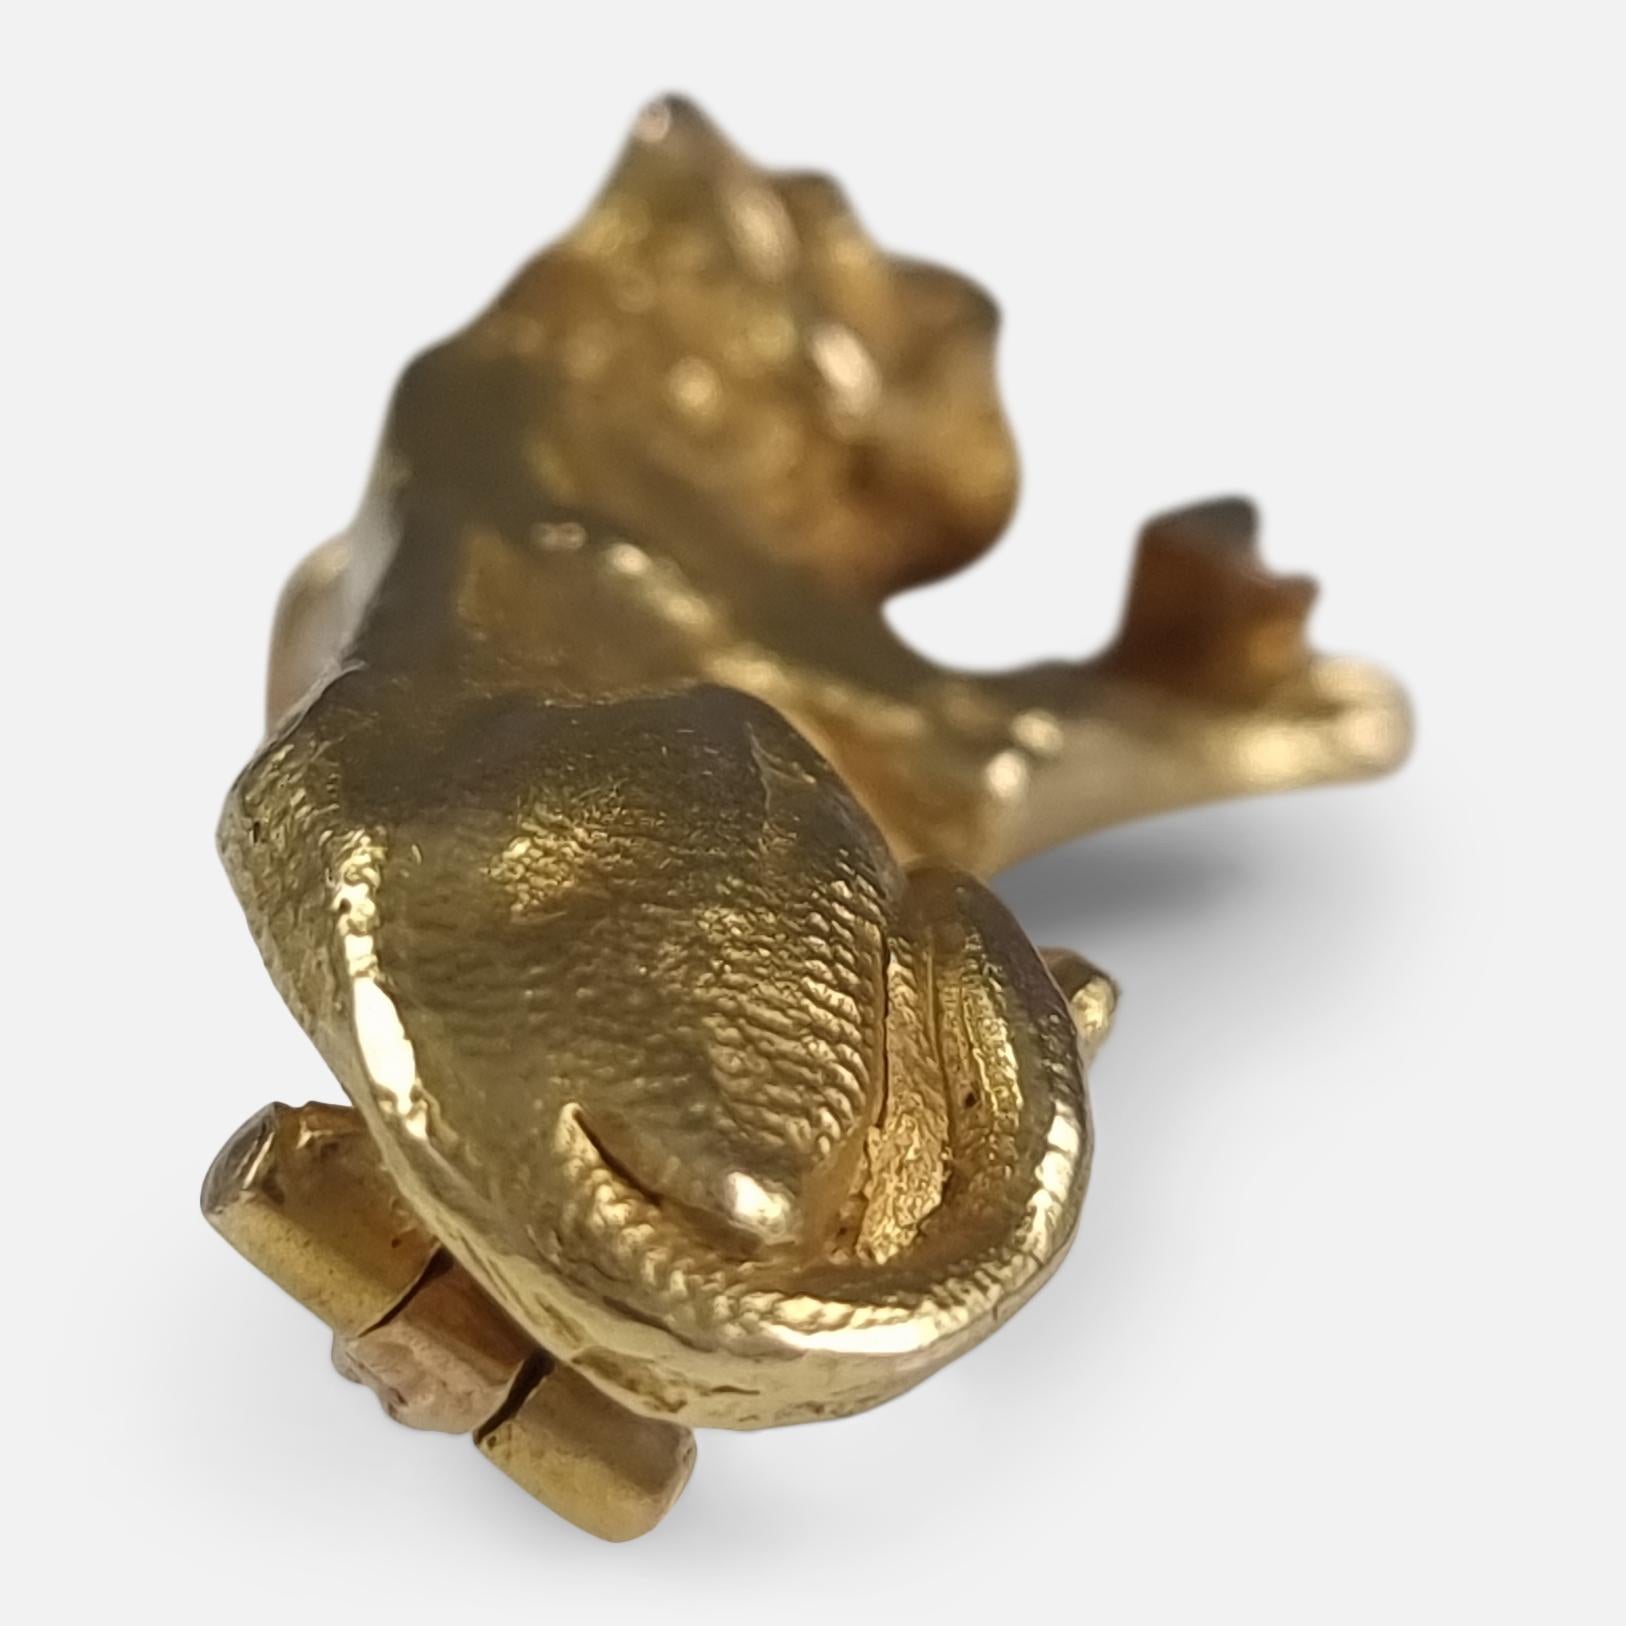 Eine spätviktorianische Löwin-Brosche aus 18 Karat Gold und 0,08 Karat Diamanten. Die Brosche ist in Form einer Löwin gefertigt, die einen altgeschliffenen Diamanten zwischen ihren Pfoten hält.

Wie für die damalige Zeit üblich, ist die Brosche